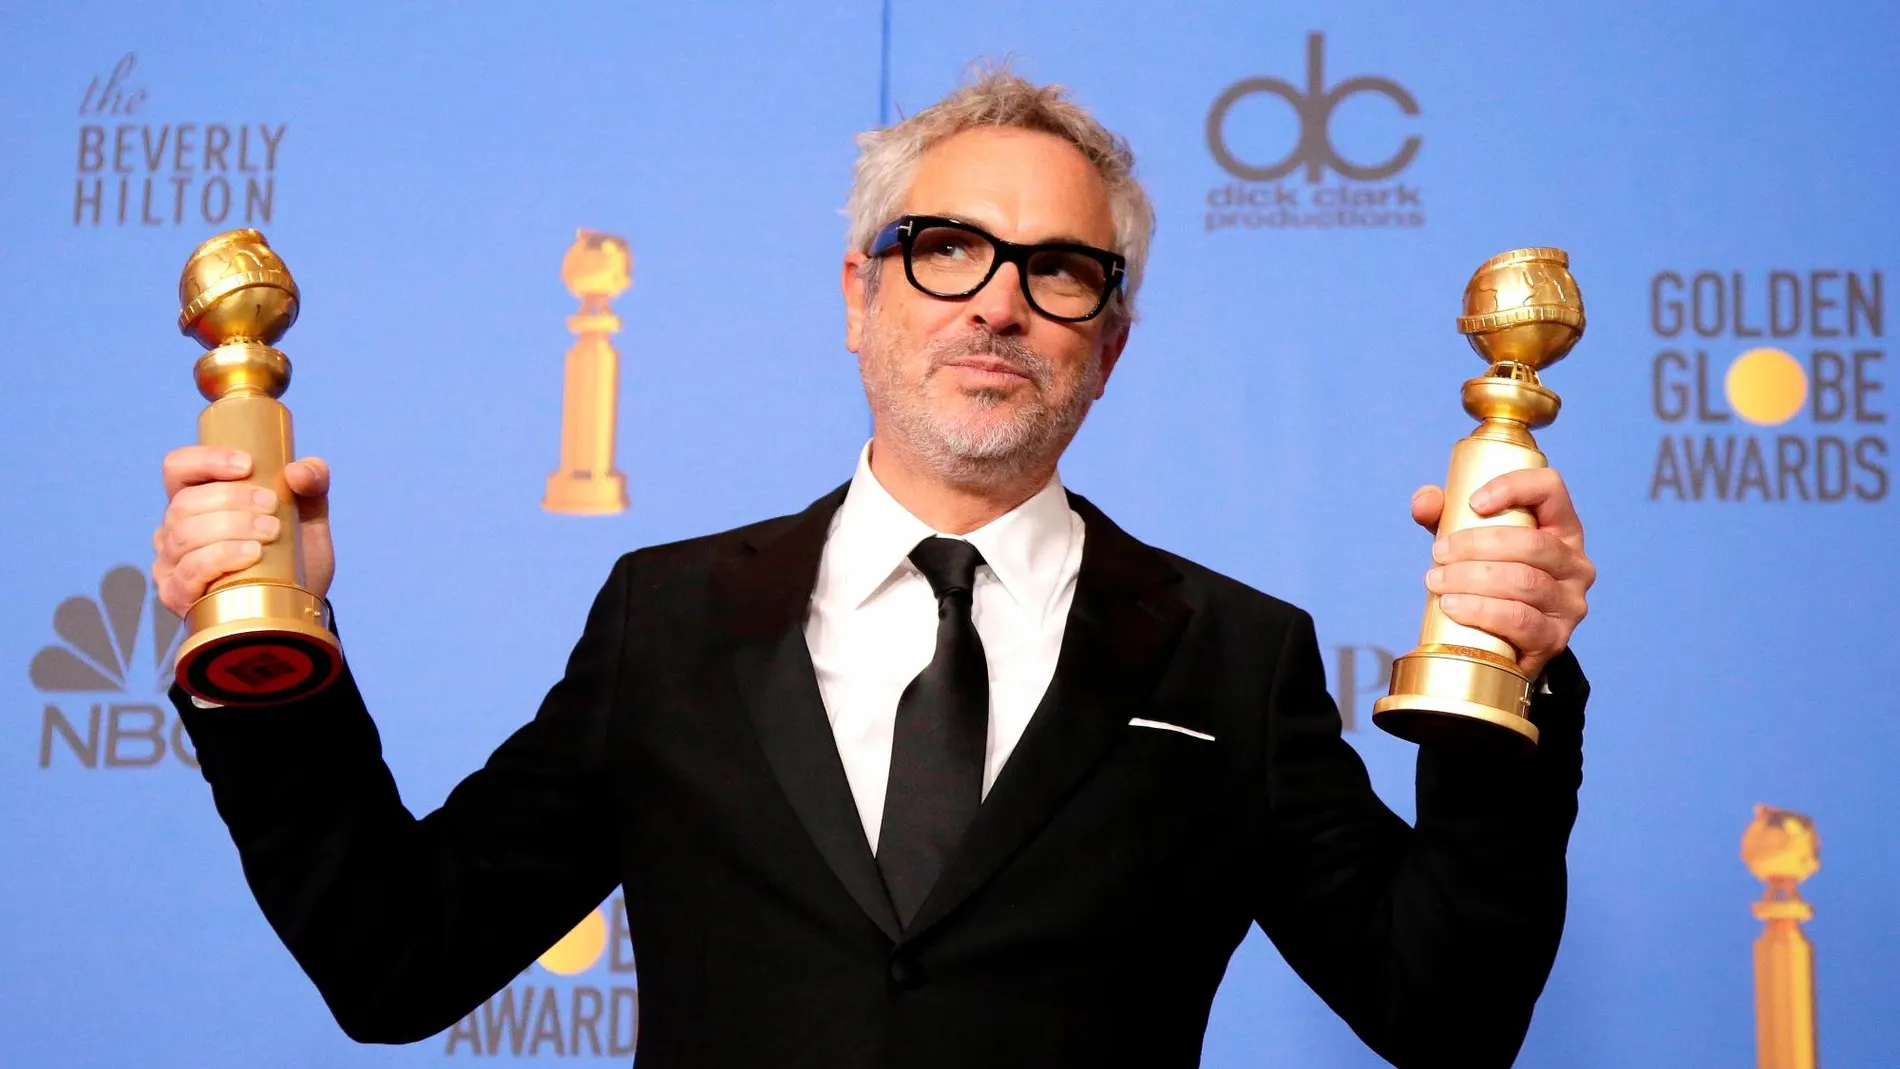 El cineasta mexicano Alfonso Cuarón posa con sus galardones a mejor director y mejor película en lengua extranjera por su largometraje "Roma", durante la 76 edición de los Globos de Oro celebrada en Beverly Hill.